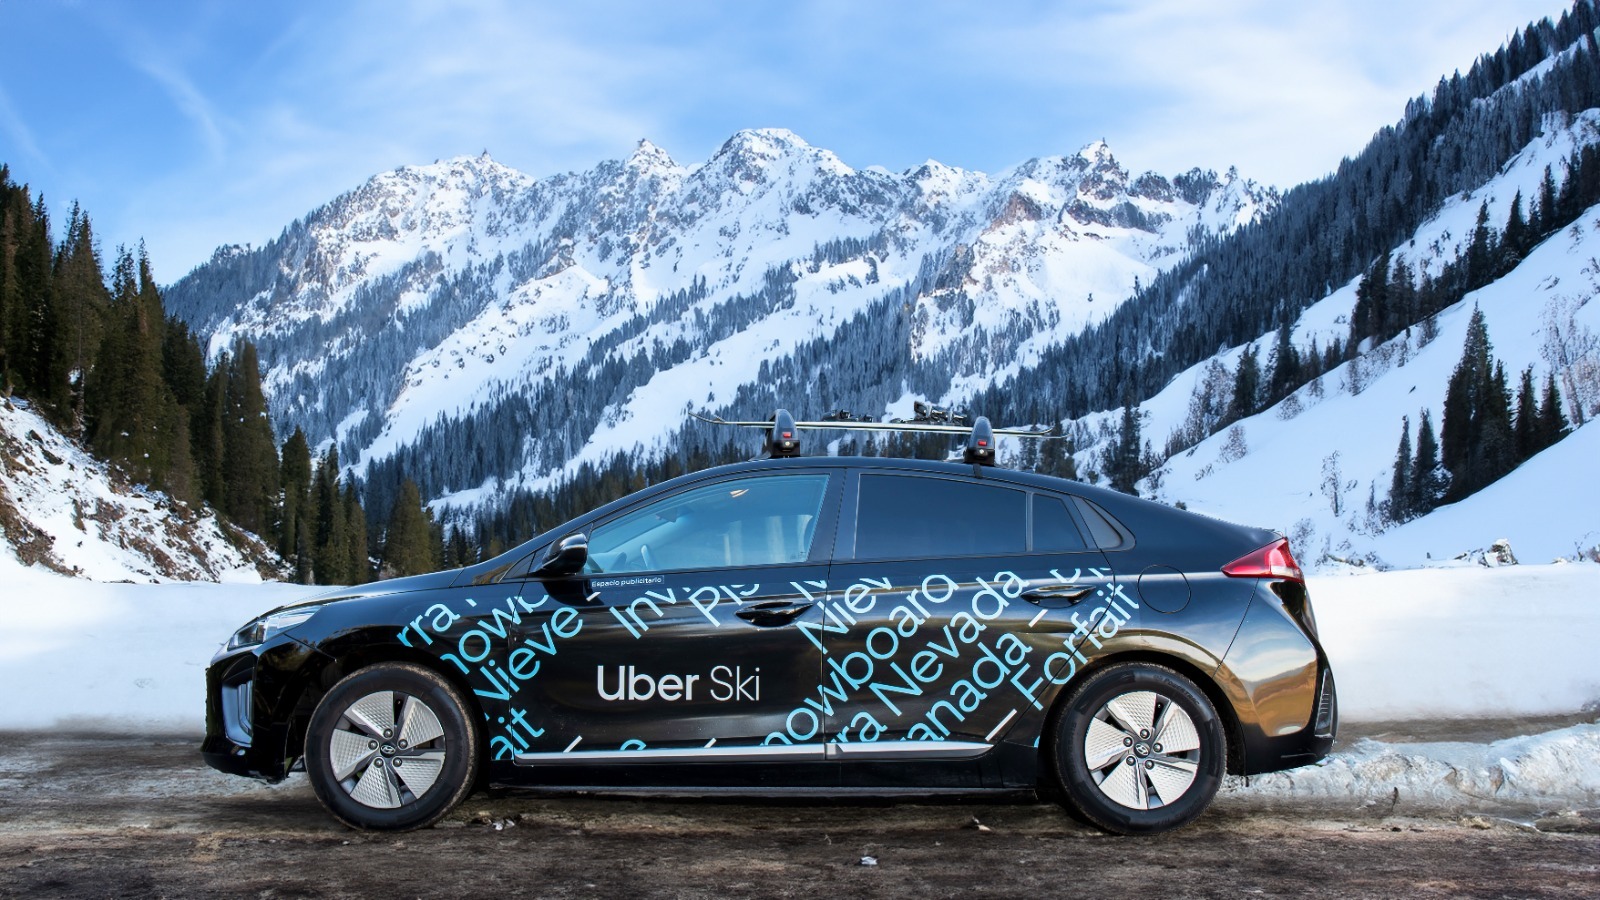 Uno de los vehículos de Uber Ski.